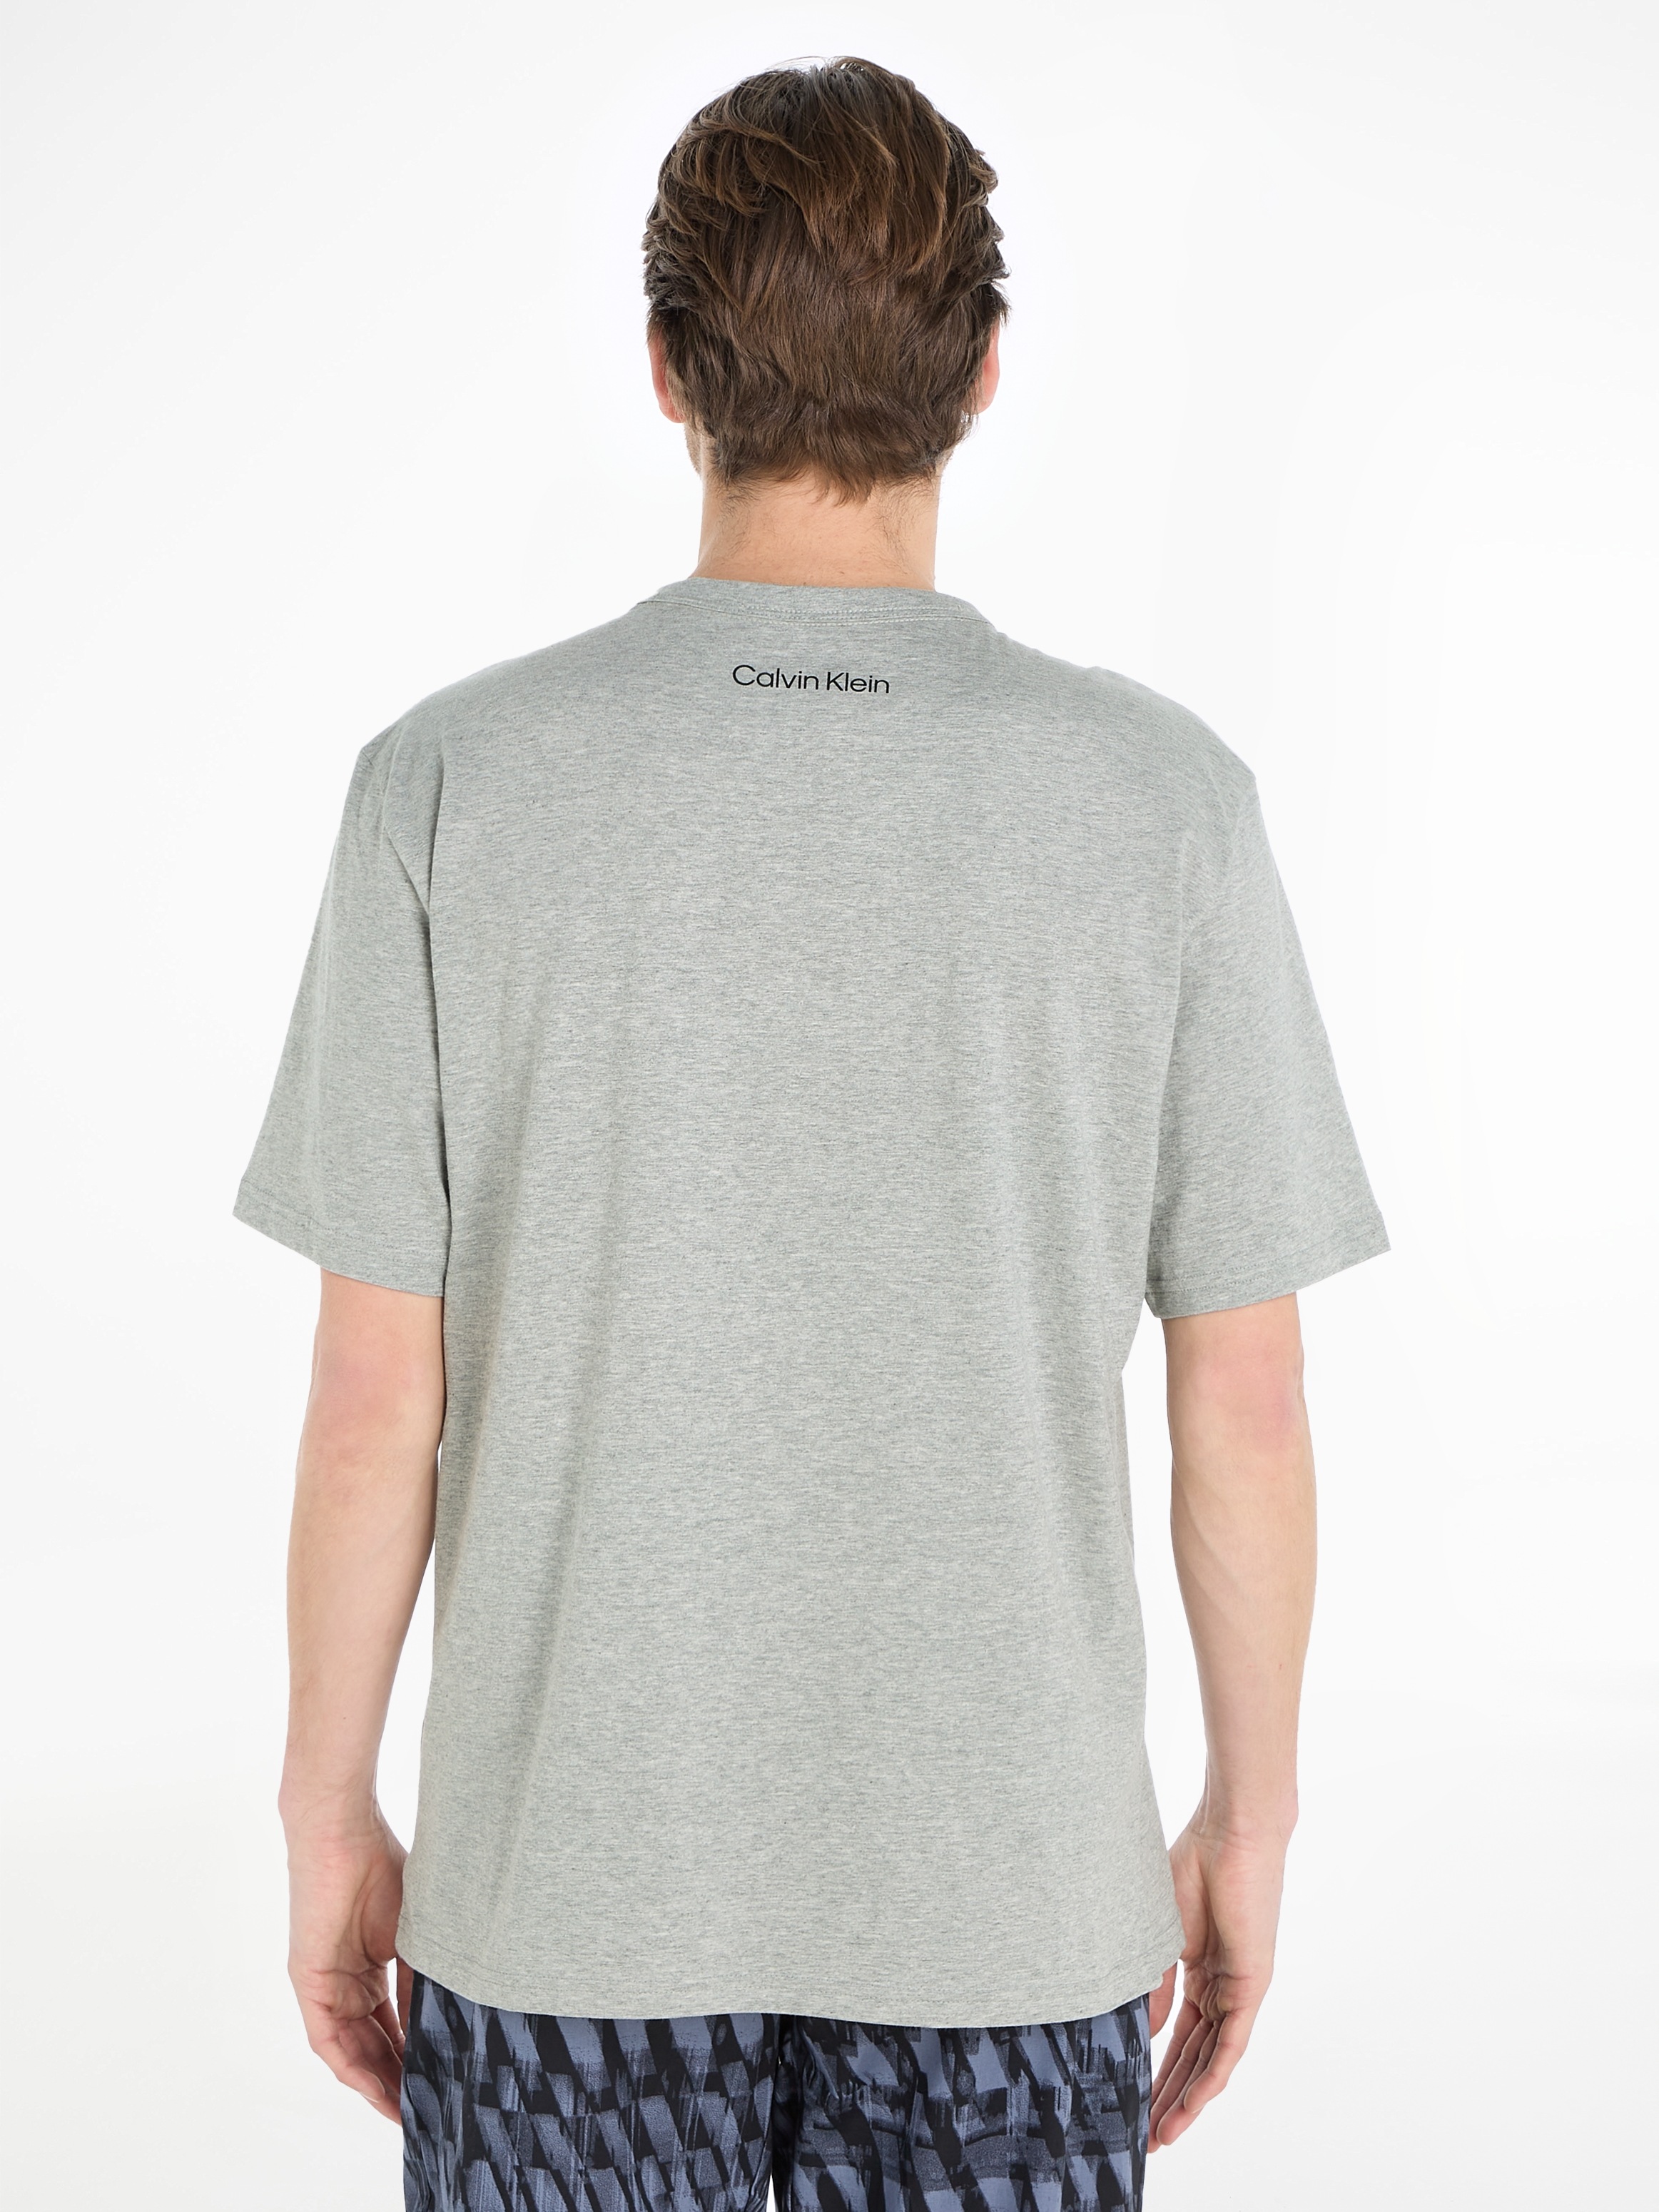 mit NECK«, auf bei CREW Klein Calvin »S/S Brust T-Shirt online der Logodruck